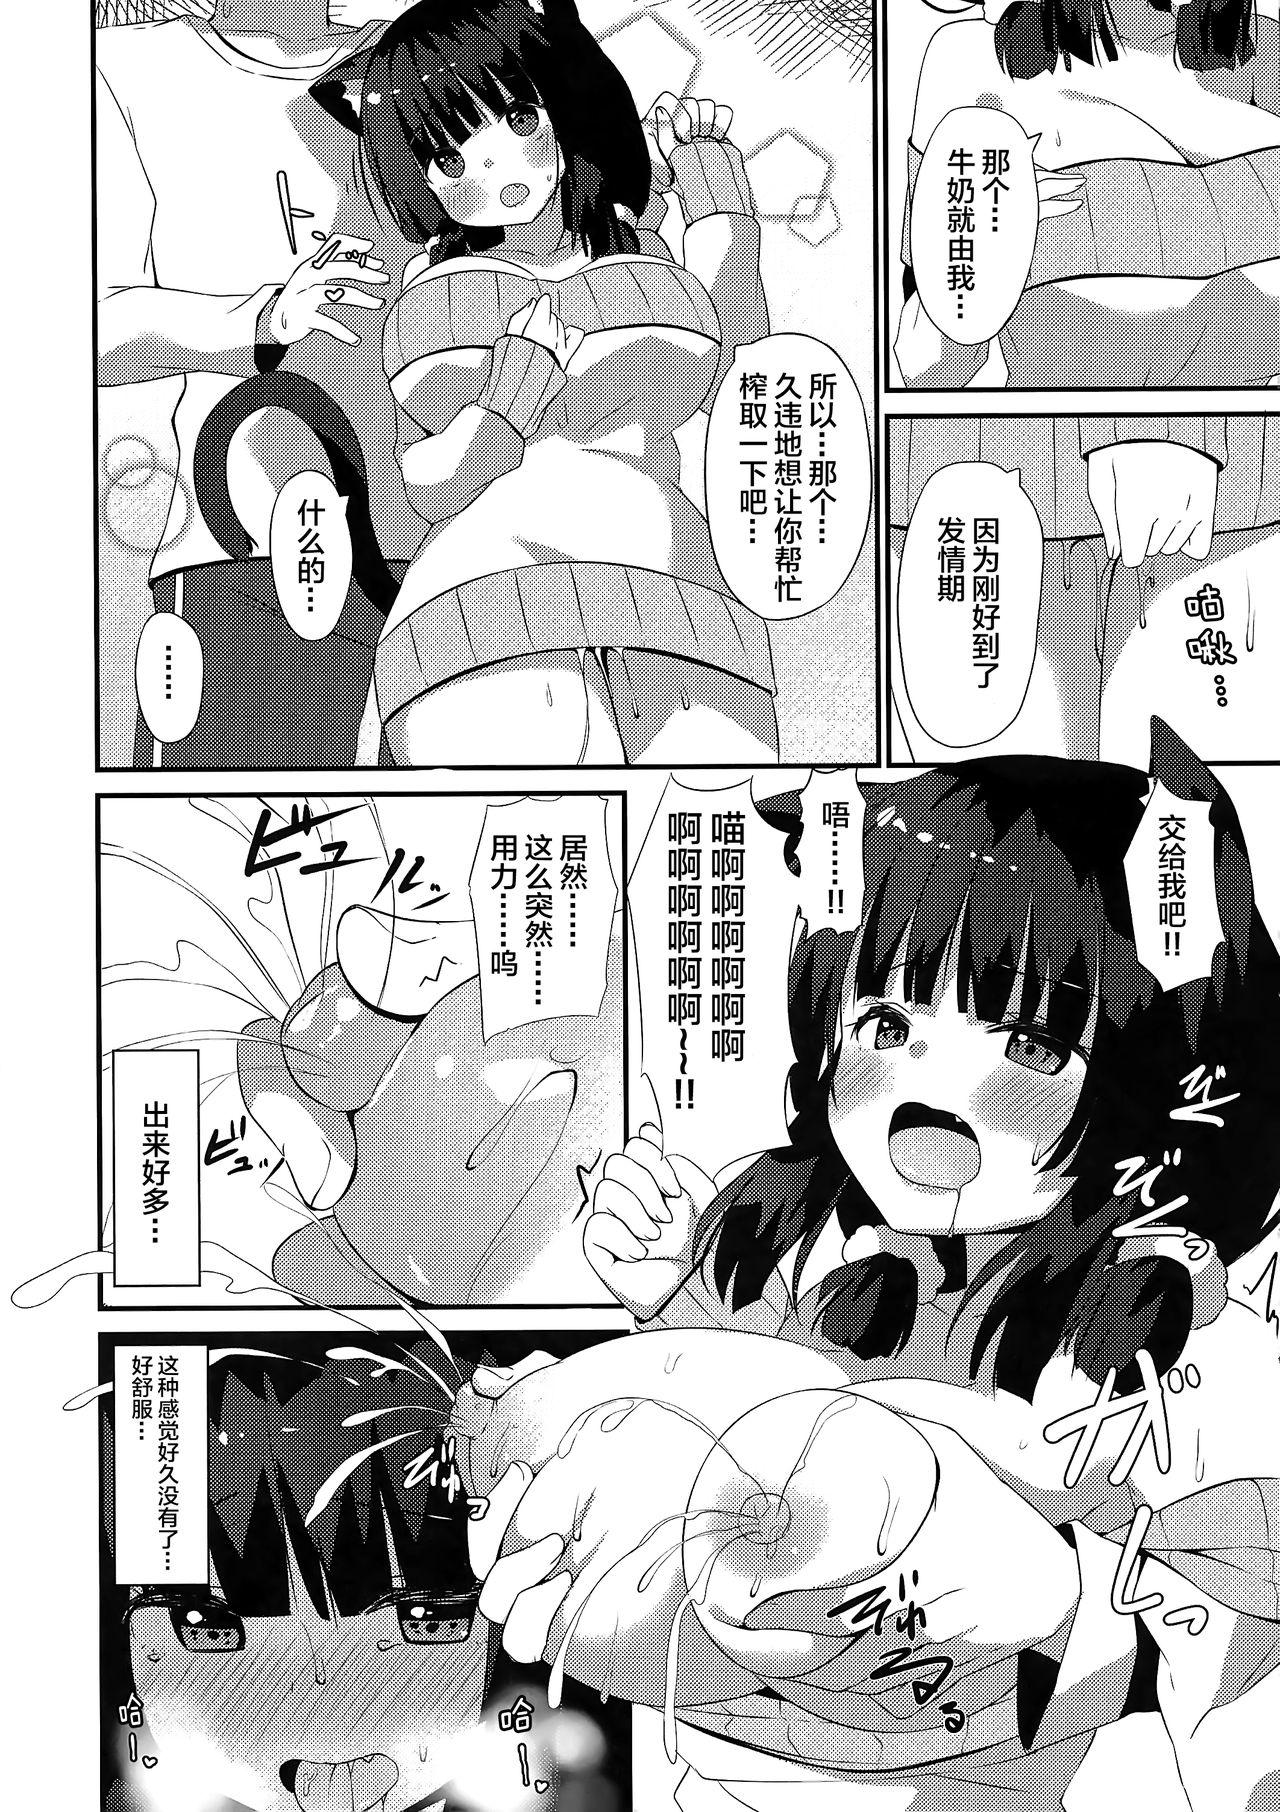 Slutty Neko Shibori - Original Madura - Page 4